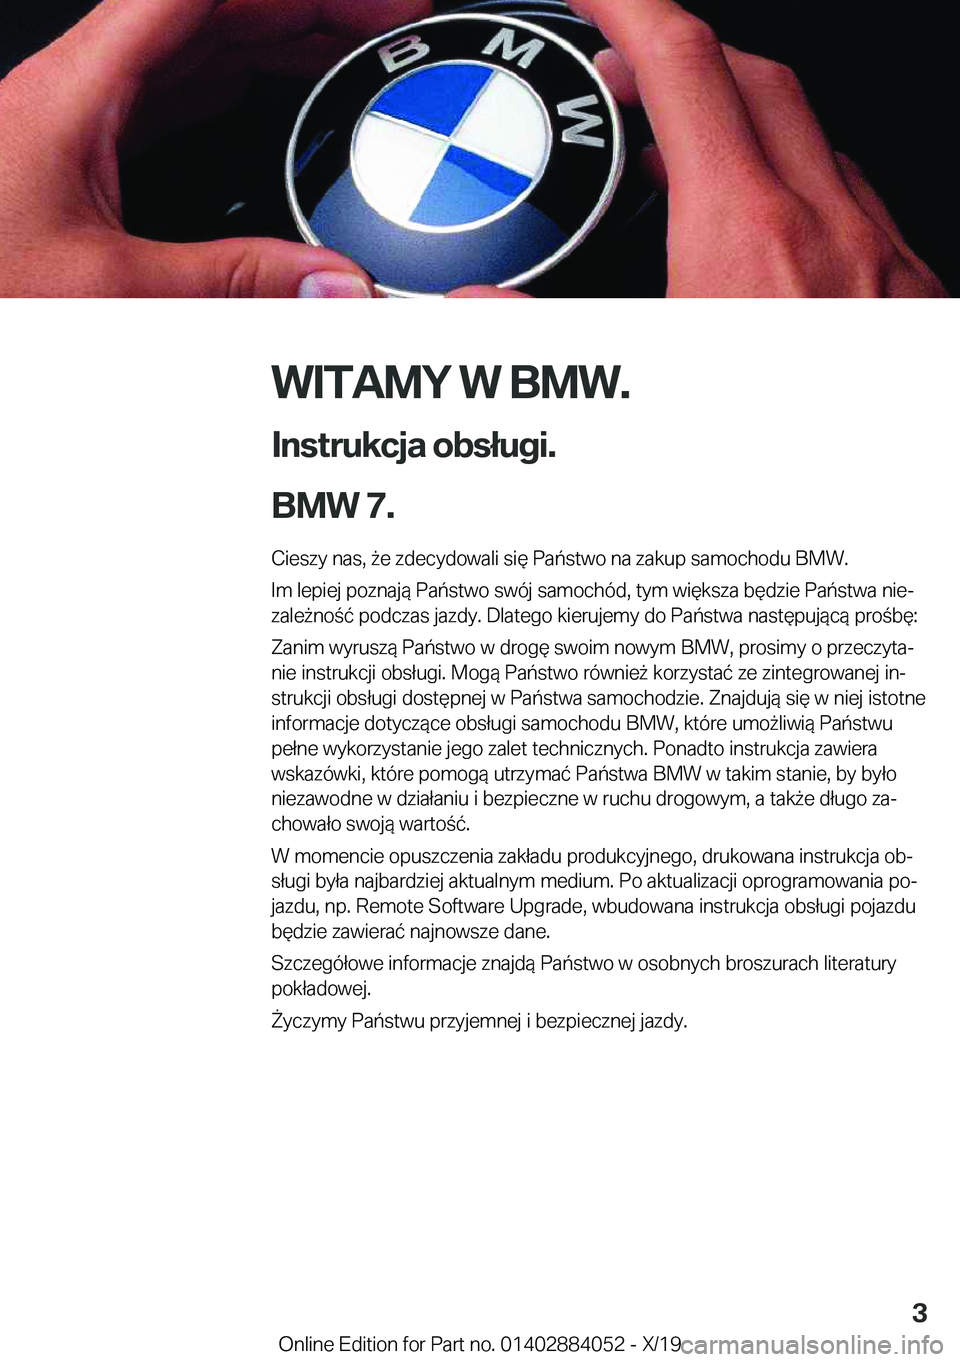 BMW 7 SERIES 2020  Instrukcja obsługi (in Polish) �W�I�T�A�M�Y��W��B�M�W�.
�I�n�s�t�r�u�k�c�j�a��o�b�s�ł�u�g�i�.
�B�M�W��7�. �C�i�e�s�z�y��n�a�s�,�9�e��z�d�e�c�y�d�o�w�a�l�i��s�i�